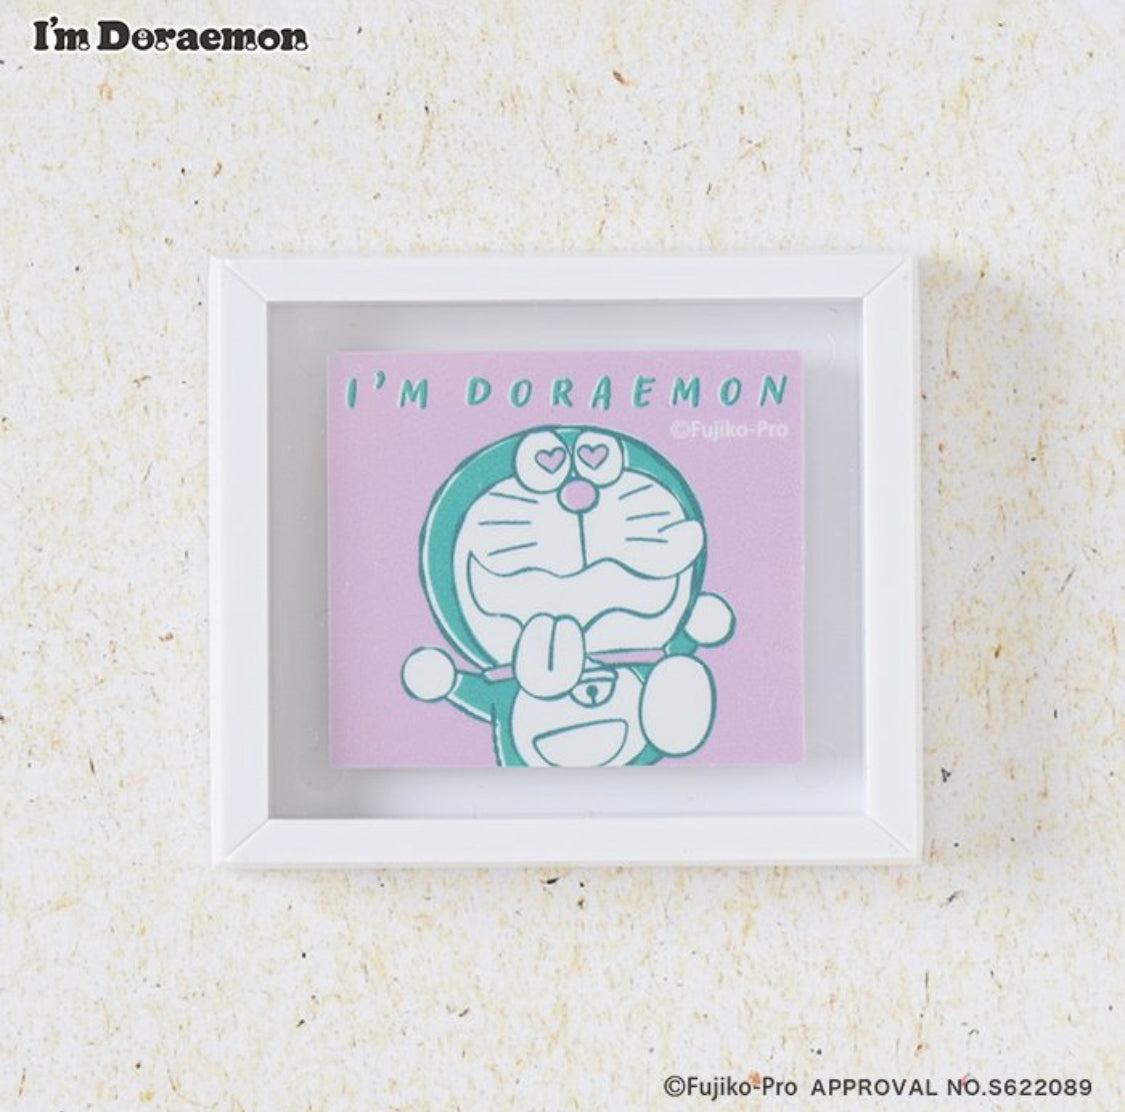 Flowering x Doraemon Frame Magnet